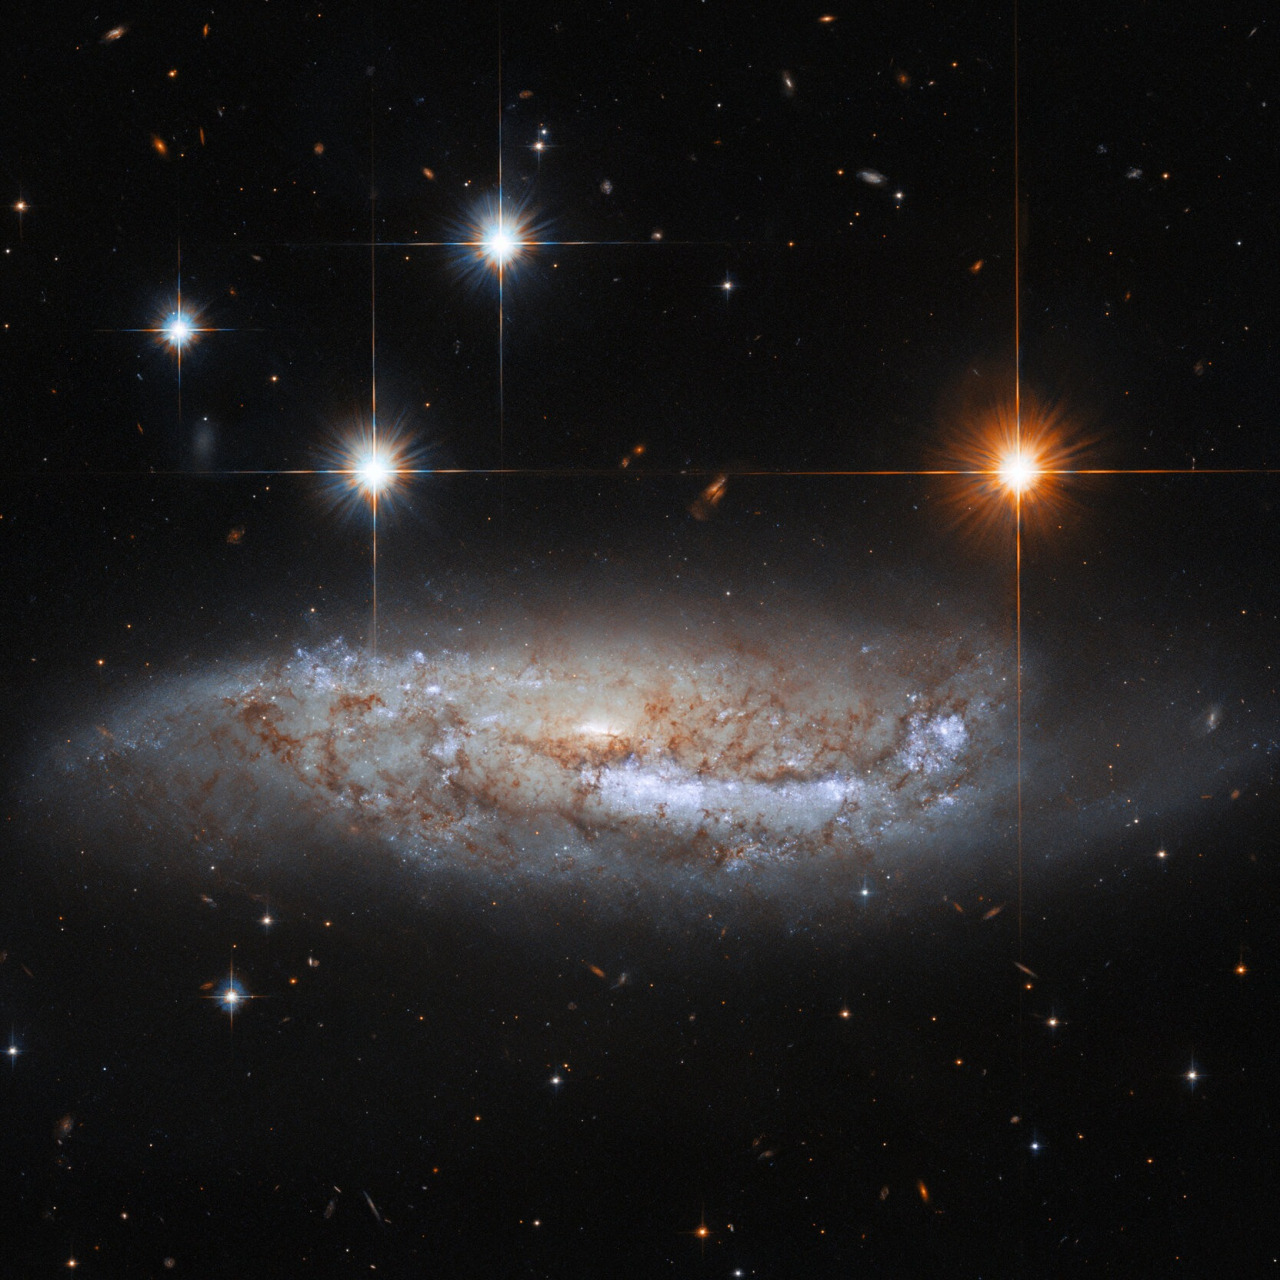 半人马座棒旋星系 nasa 公布一张哈勃望远镜拍摄的「ngc 3568」星系